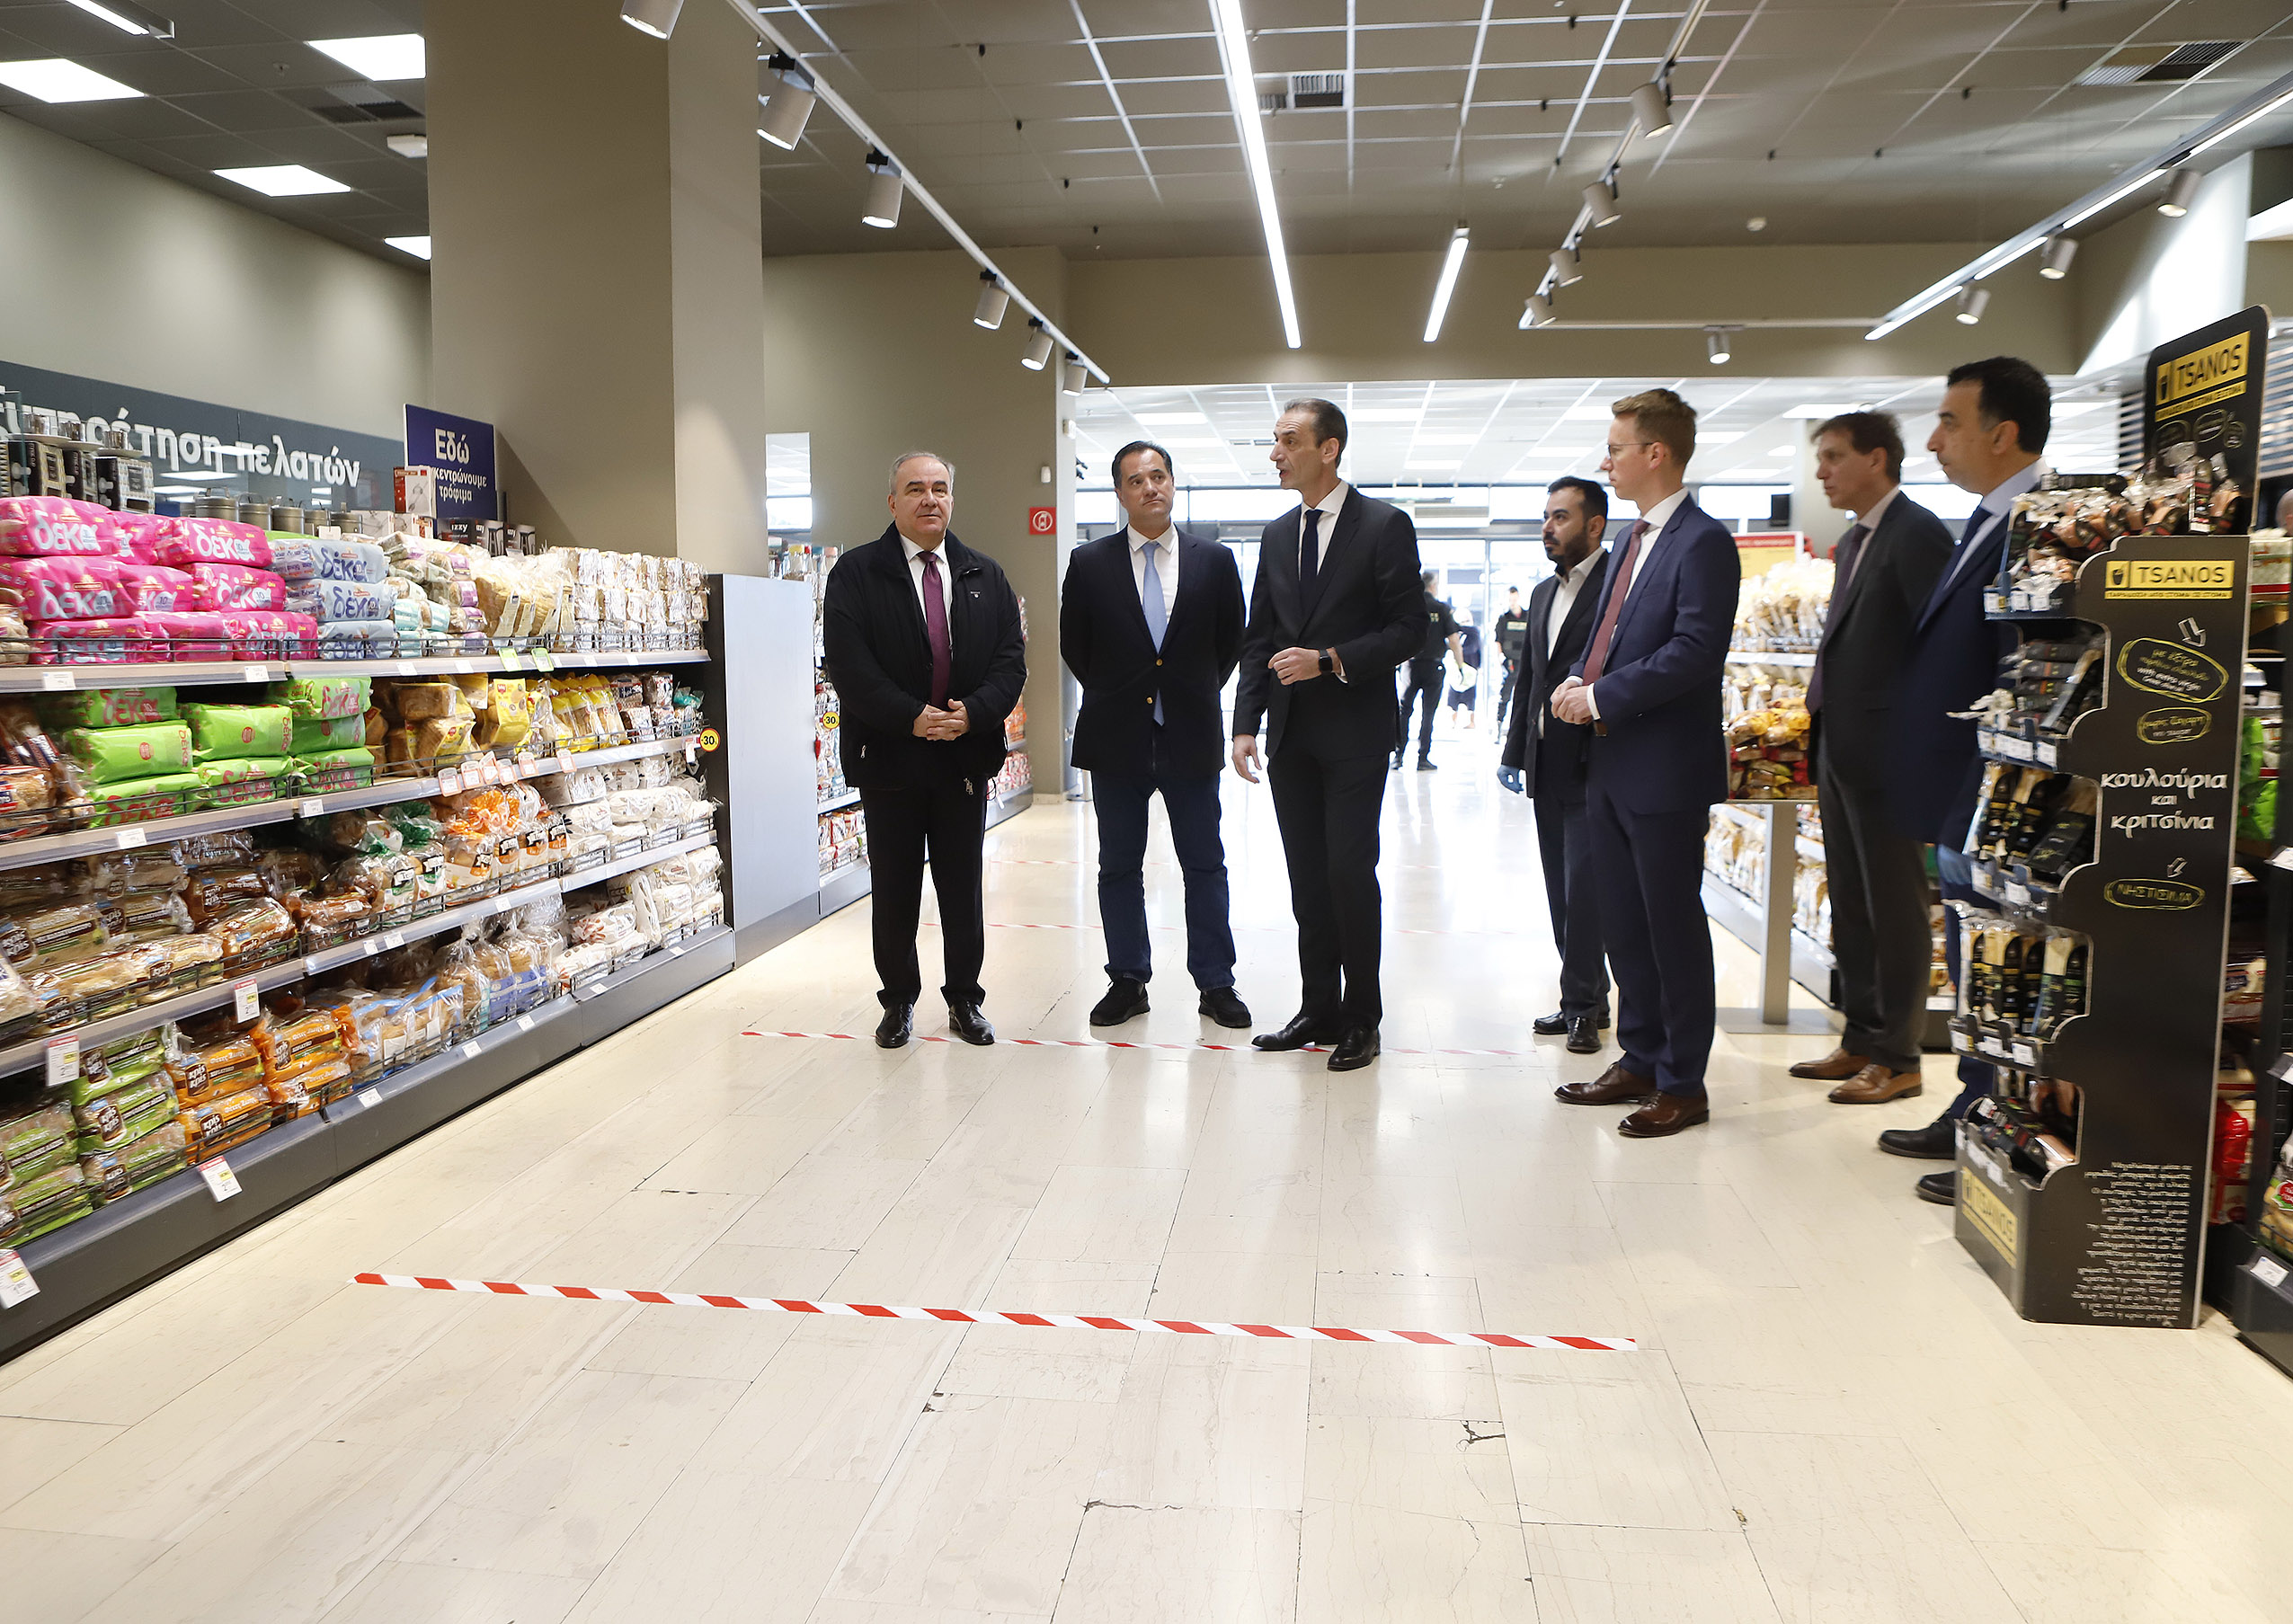 Ο Υπουργός Ανάπτυξης & Επενδύσεων κ. Α. Γεωργιάδης και ο Υφυπουργός κ. Ν. Παπαθανάσης πραγματοποίησαν αυτοψία σε σουπερμάρκετ